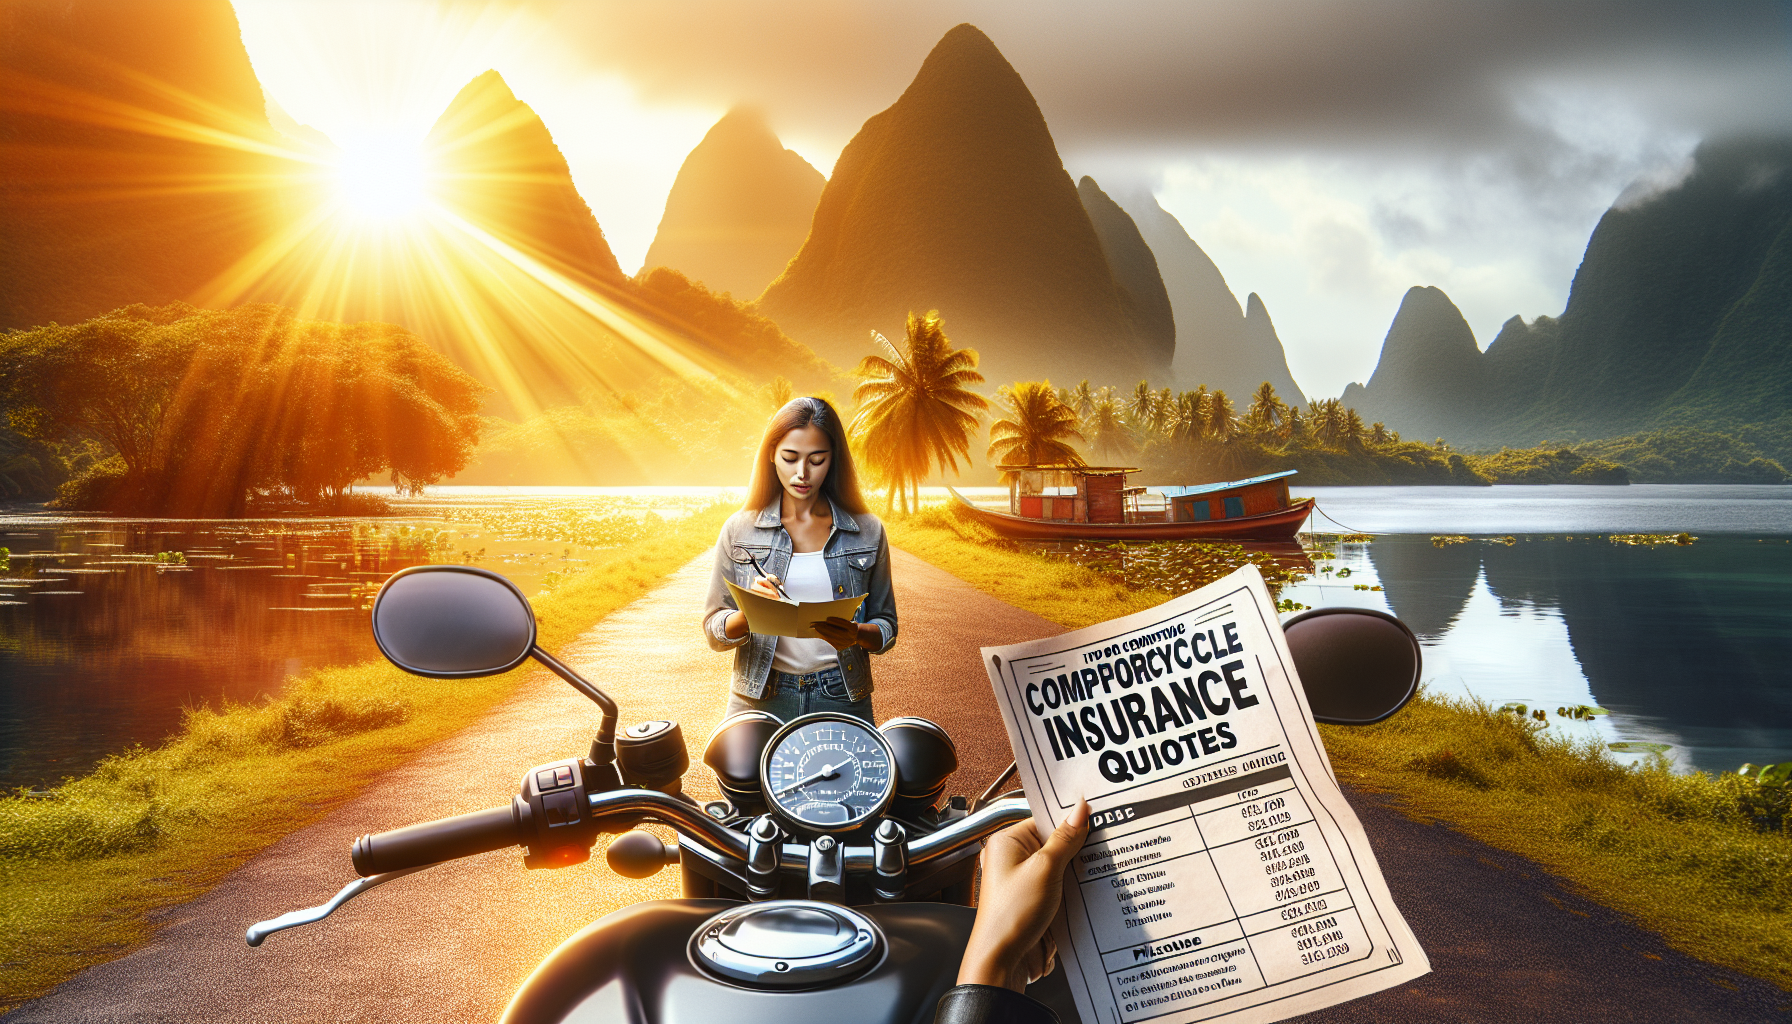 découvrez nos conseils pour comparer les devis d'assurance moto à la réunion pour trouver la meilleure offre. assurance moto 974 : comparez et économisez sur votre assurance moto.